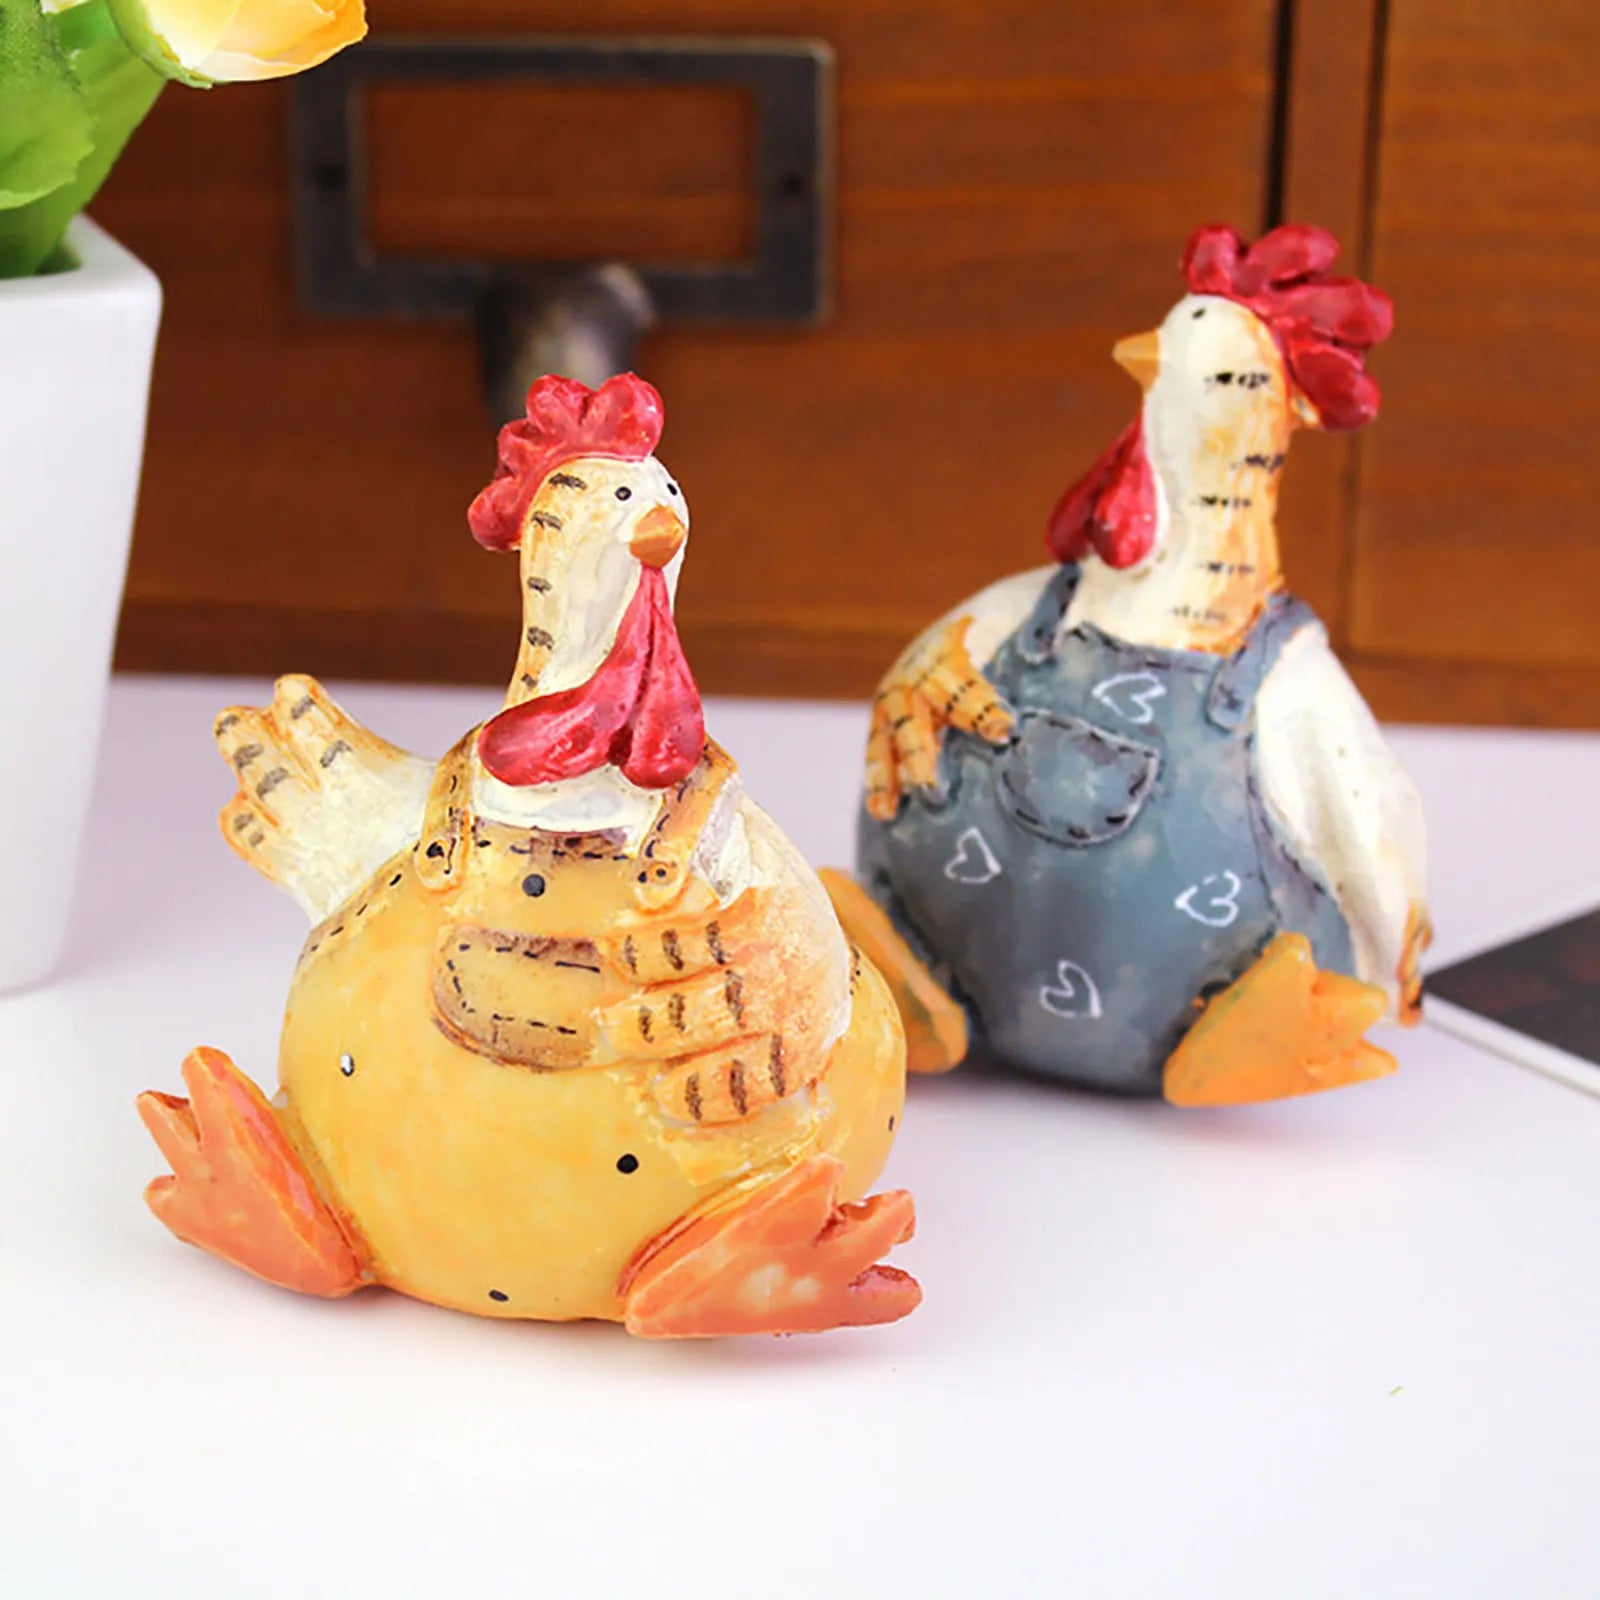 Pásová řemesla páry párové kuřecí prázdninové dekorace Studium Dekorace obývacího pokoje Domácí skleněná ozdoba koule si rampouta ornament